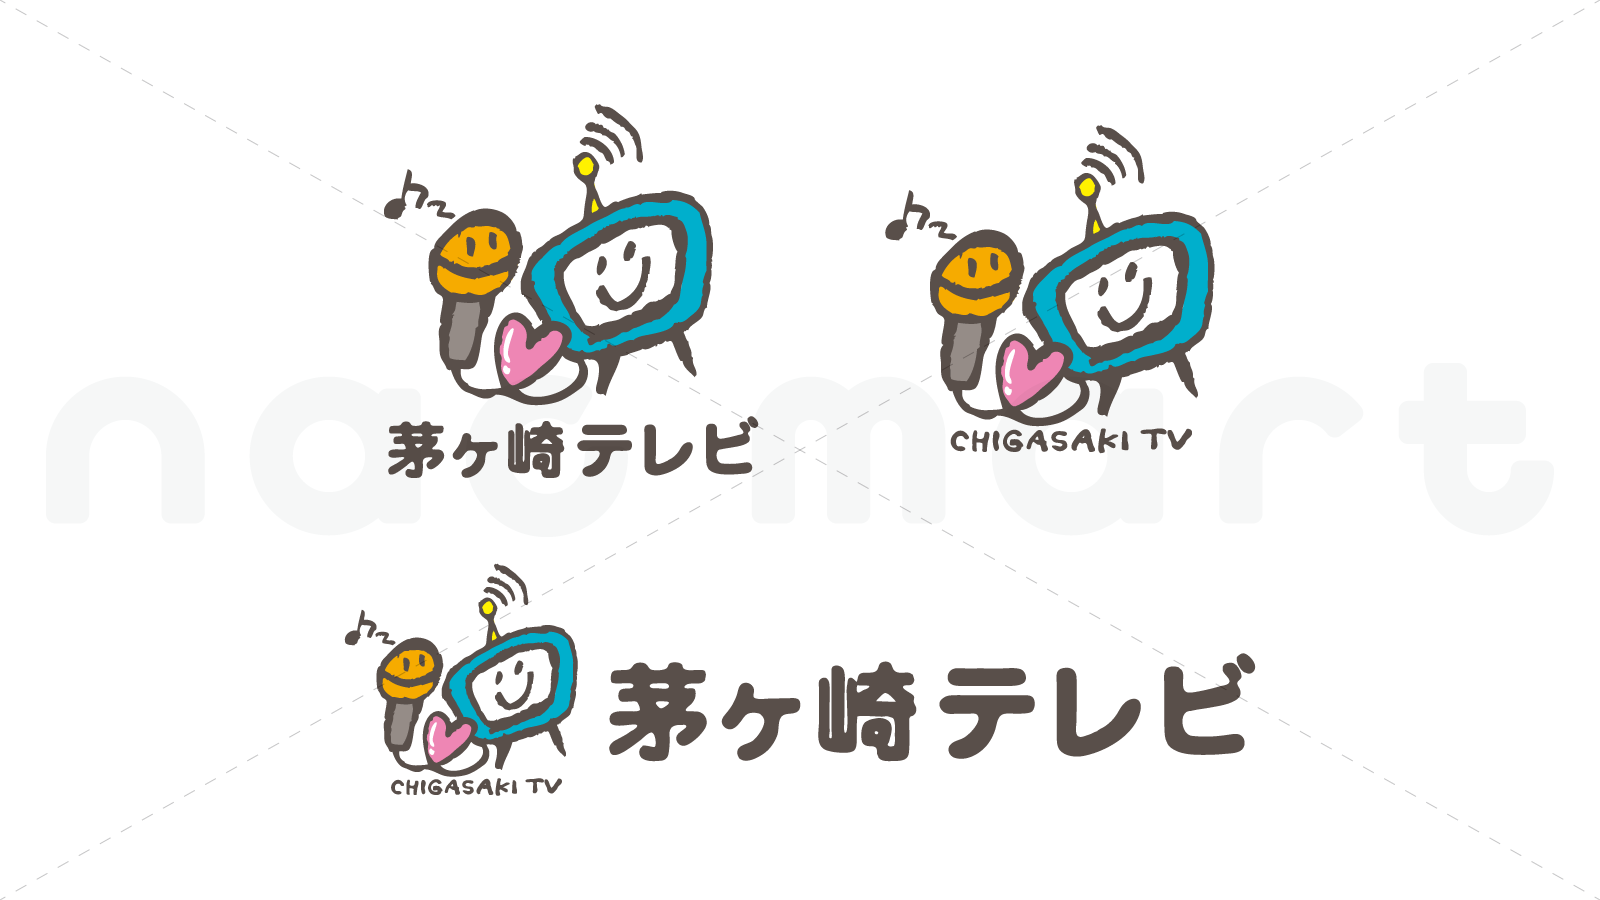 茅ヶ崎テレビのロゴマーク画像